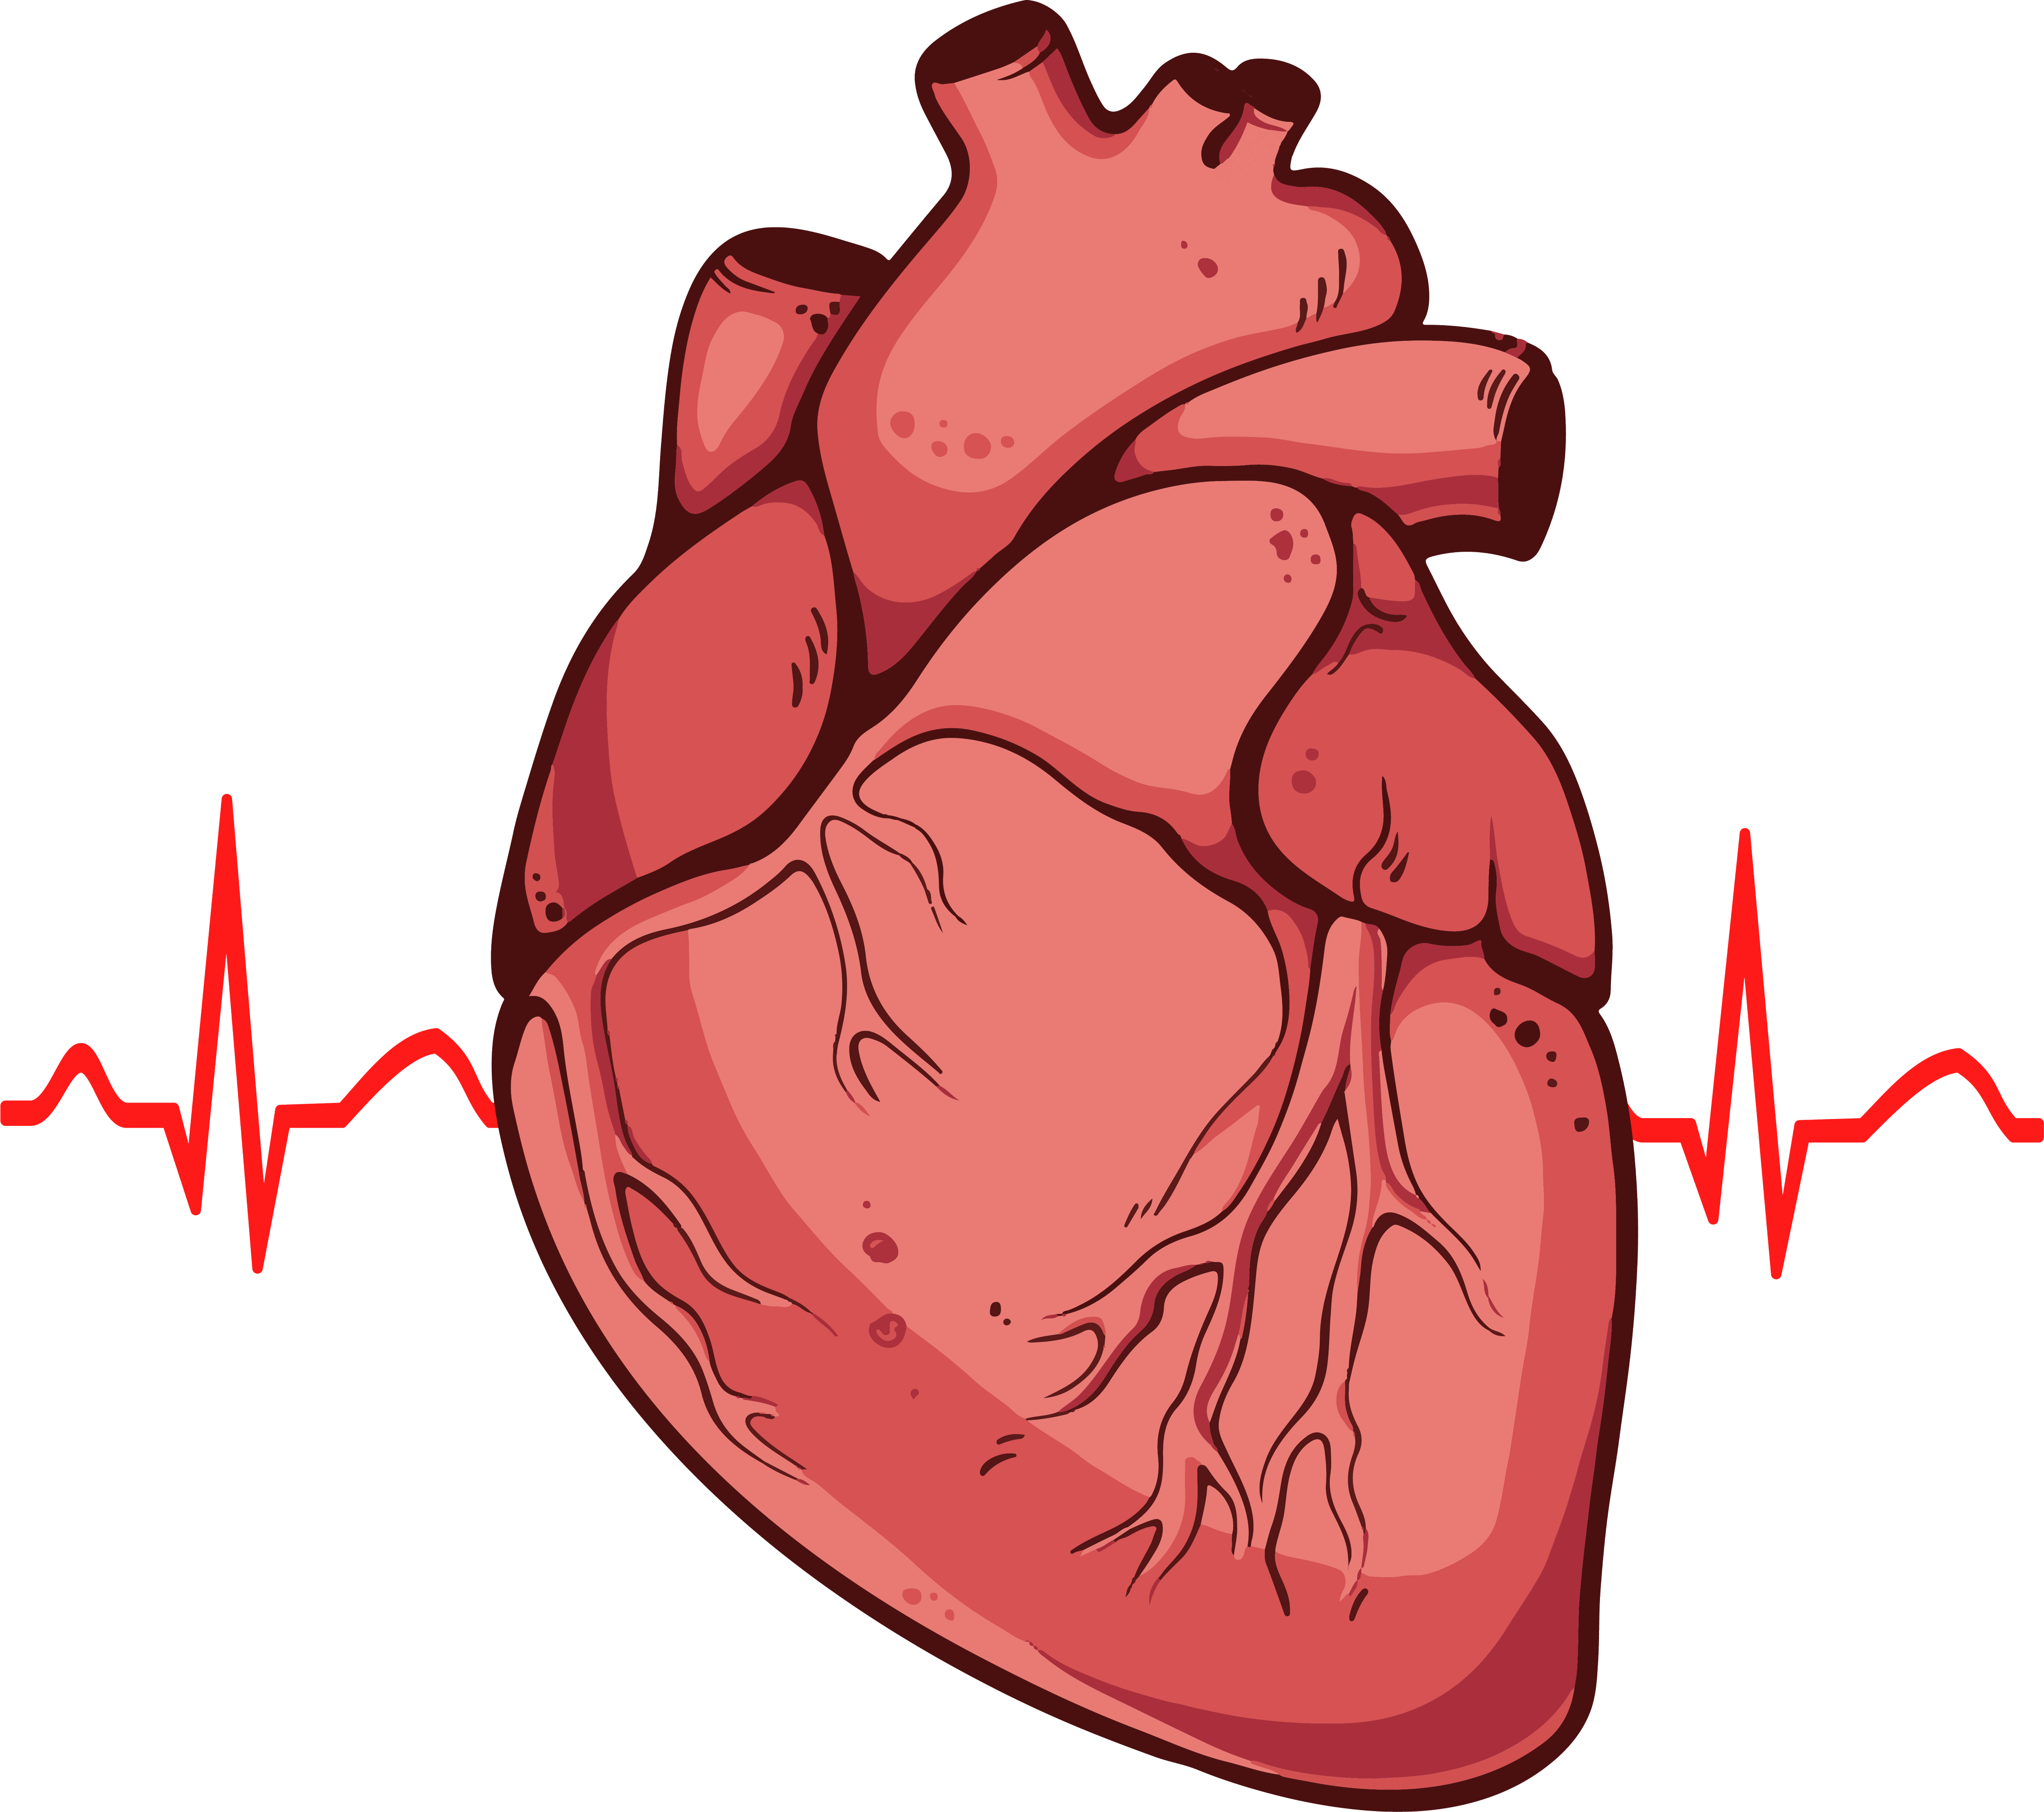 Imagem transparente do PNG do coração humano vermelho